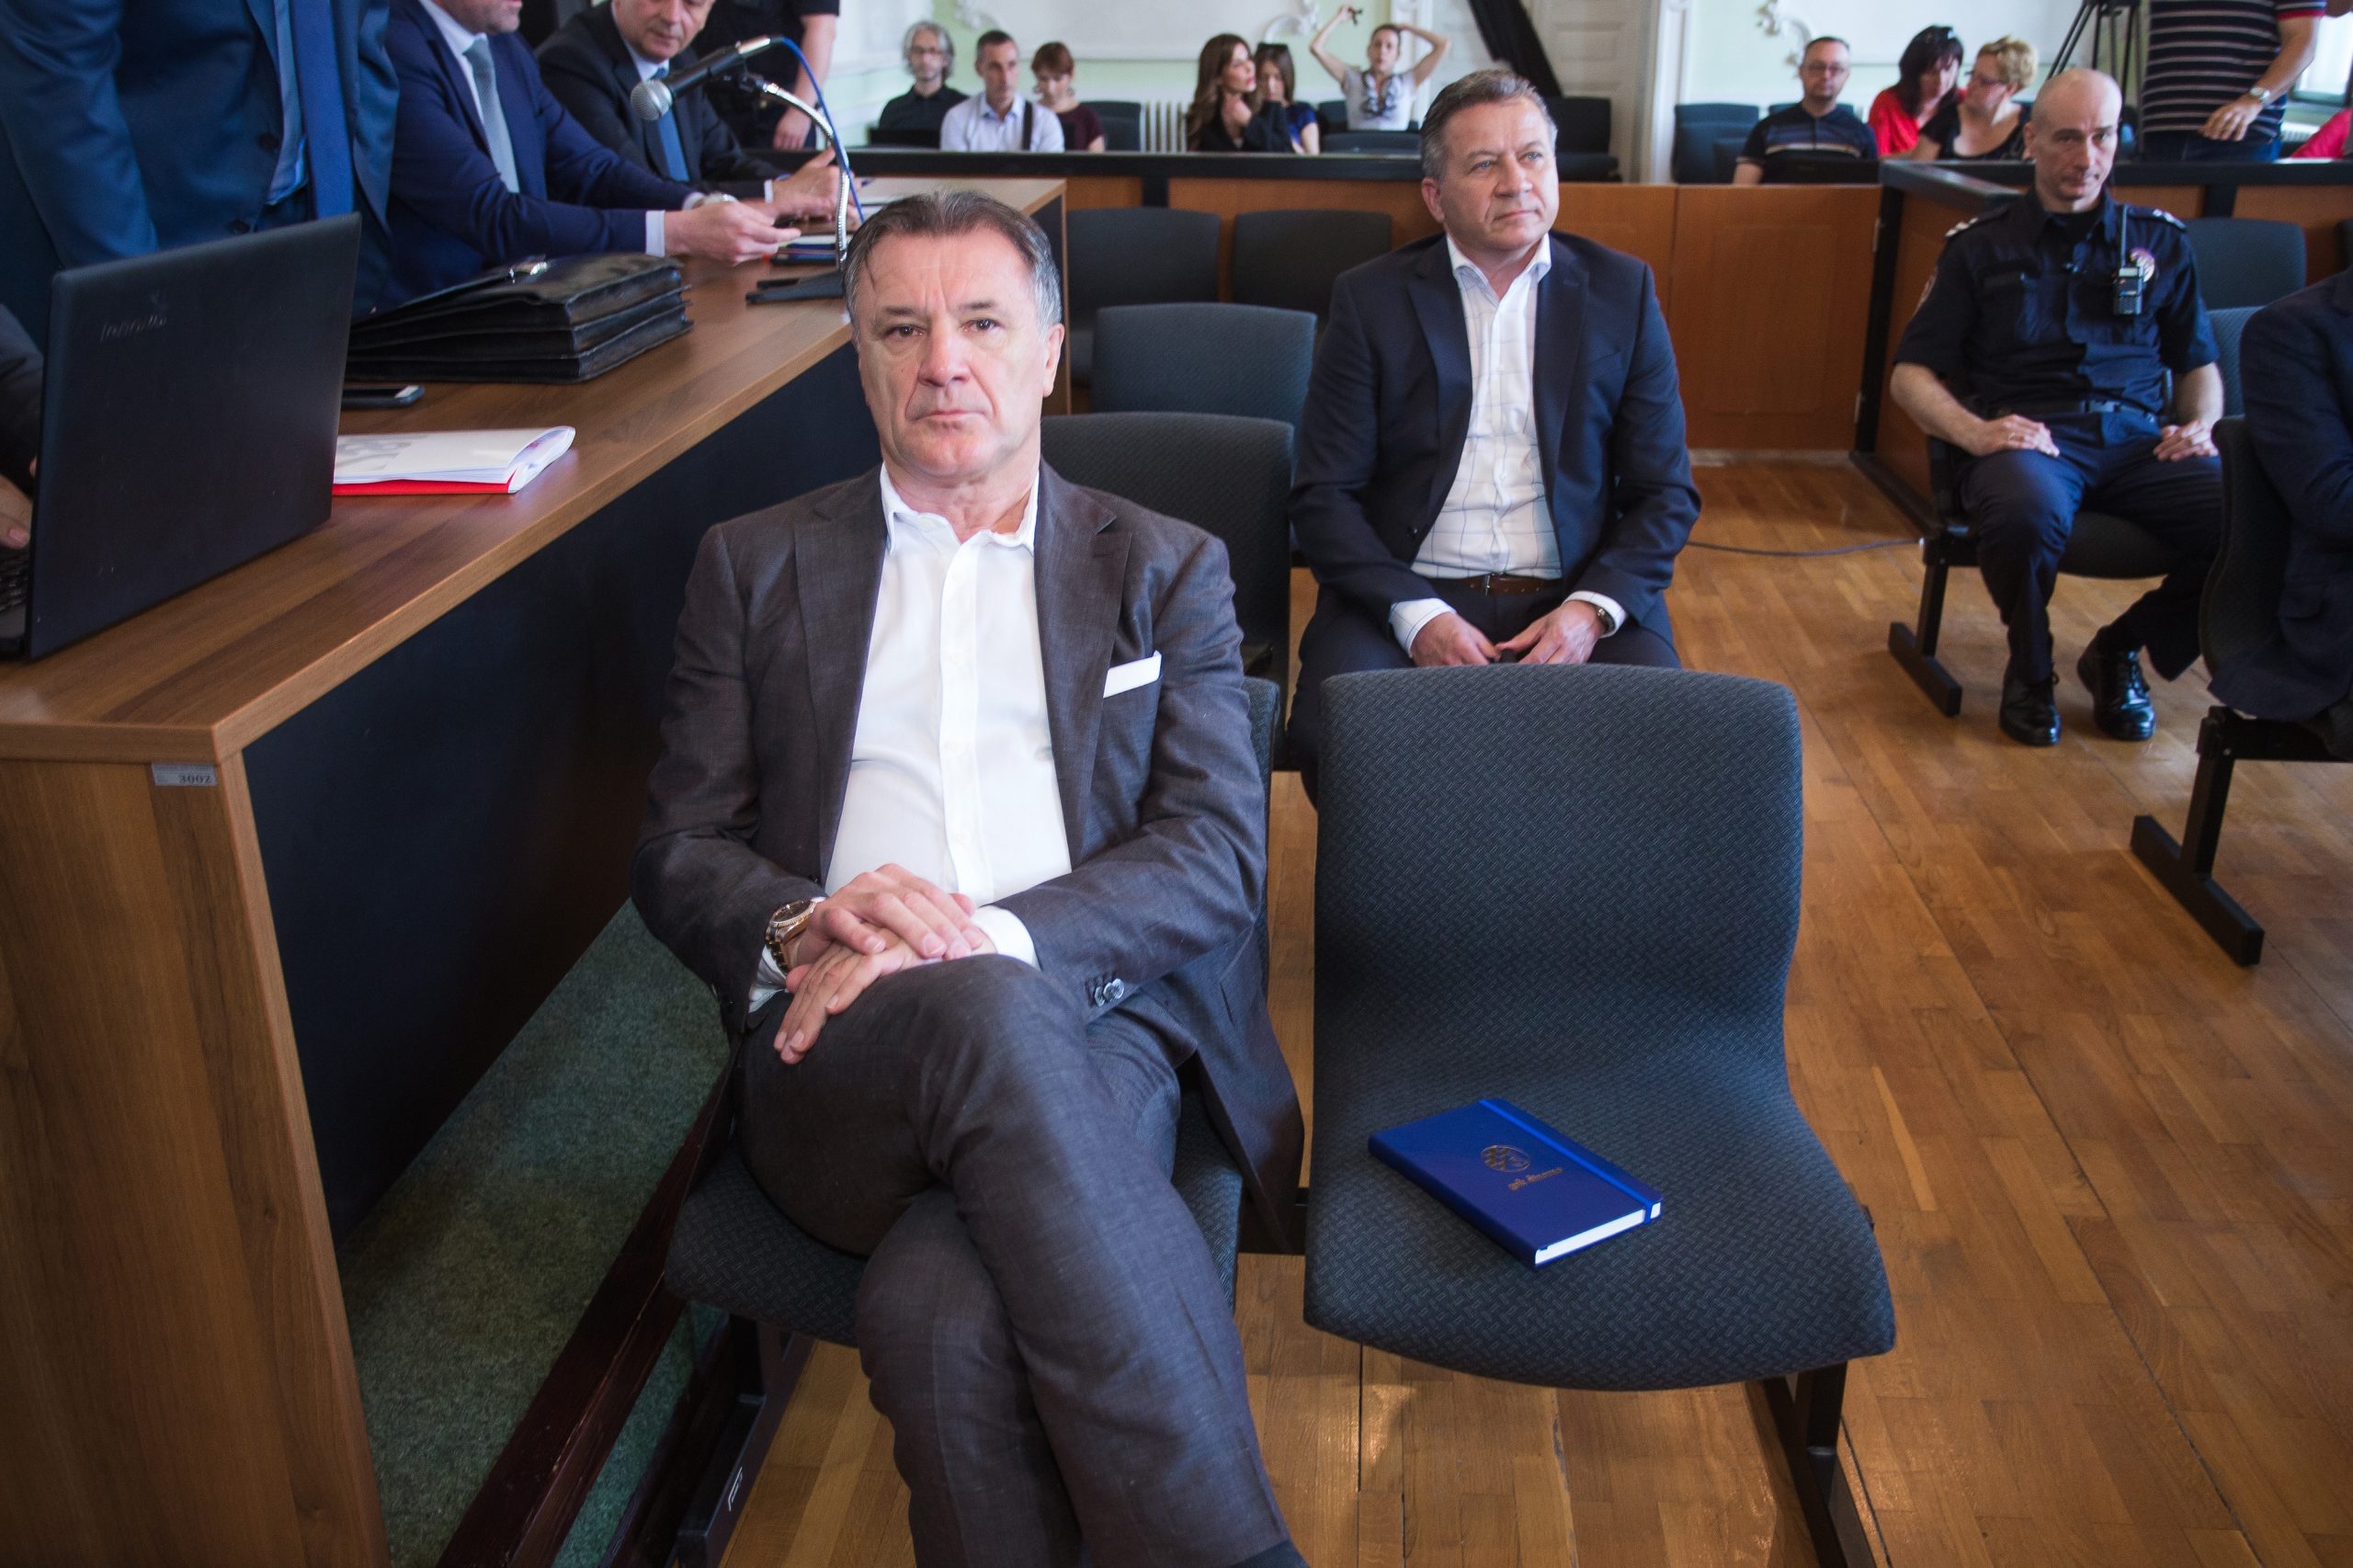 28.05.2018., Osijek - Na Zupanijskom sudu nastavljeno je sudjenje Zdravku Mamicu i ostalima za izvlacenje novca iz Dinama. 

Photo: Davor Javorovic/PIXSELL